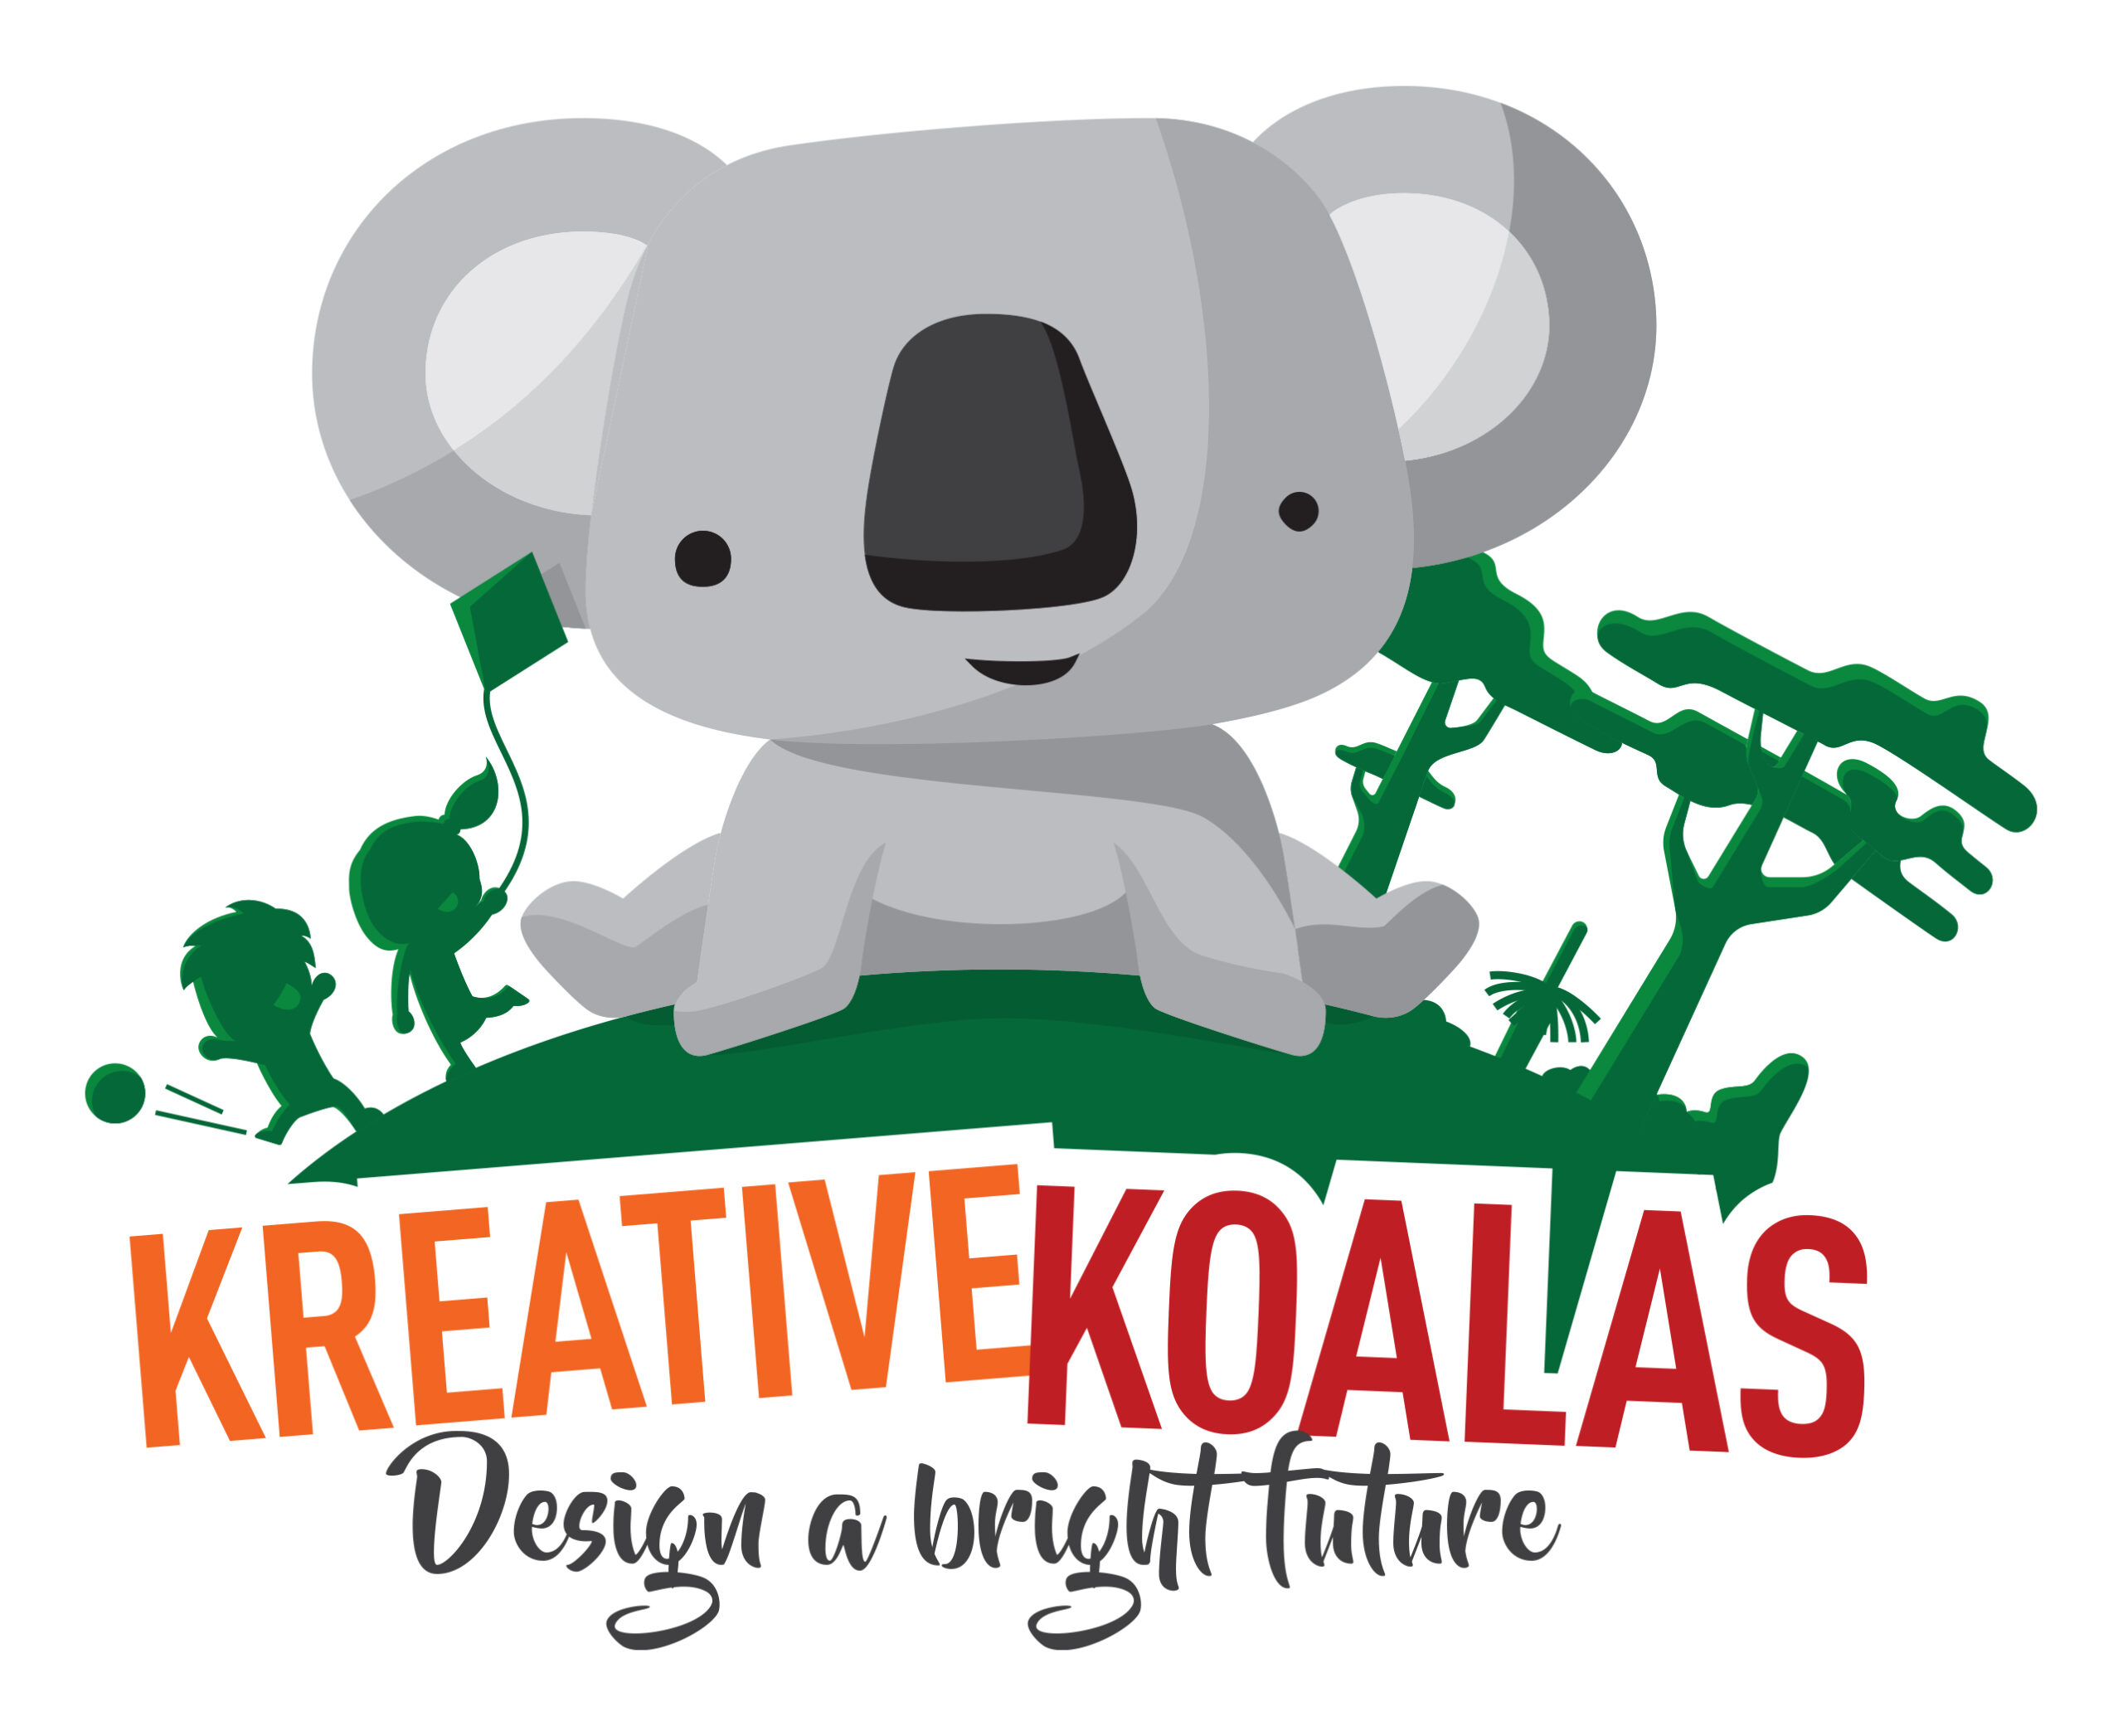 Kreative Koalas Logo